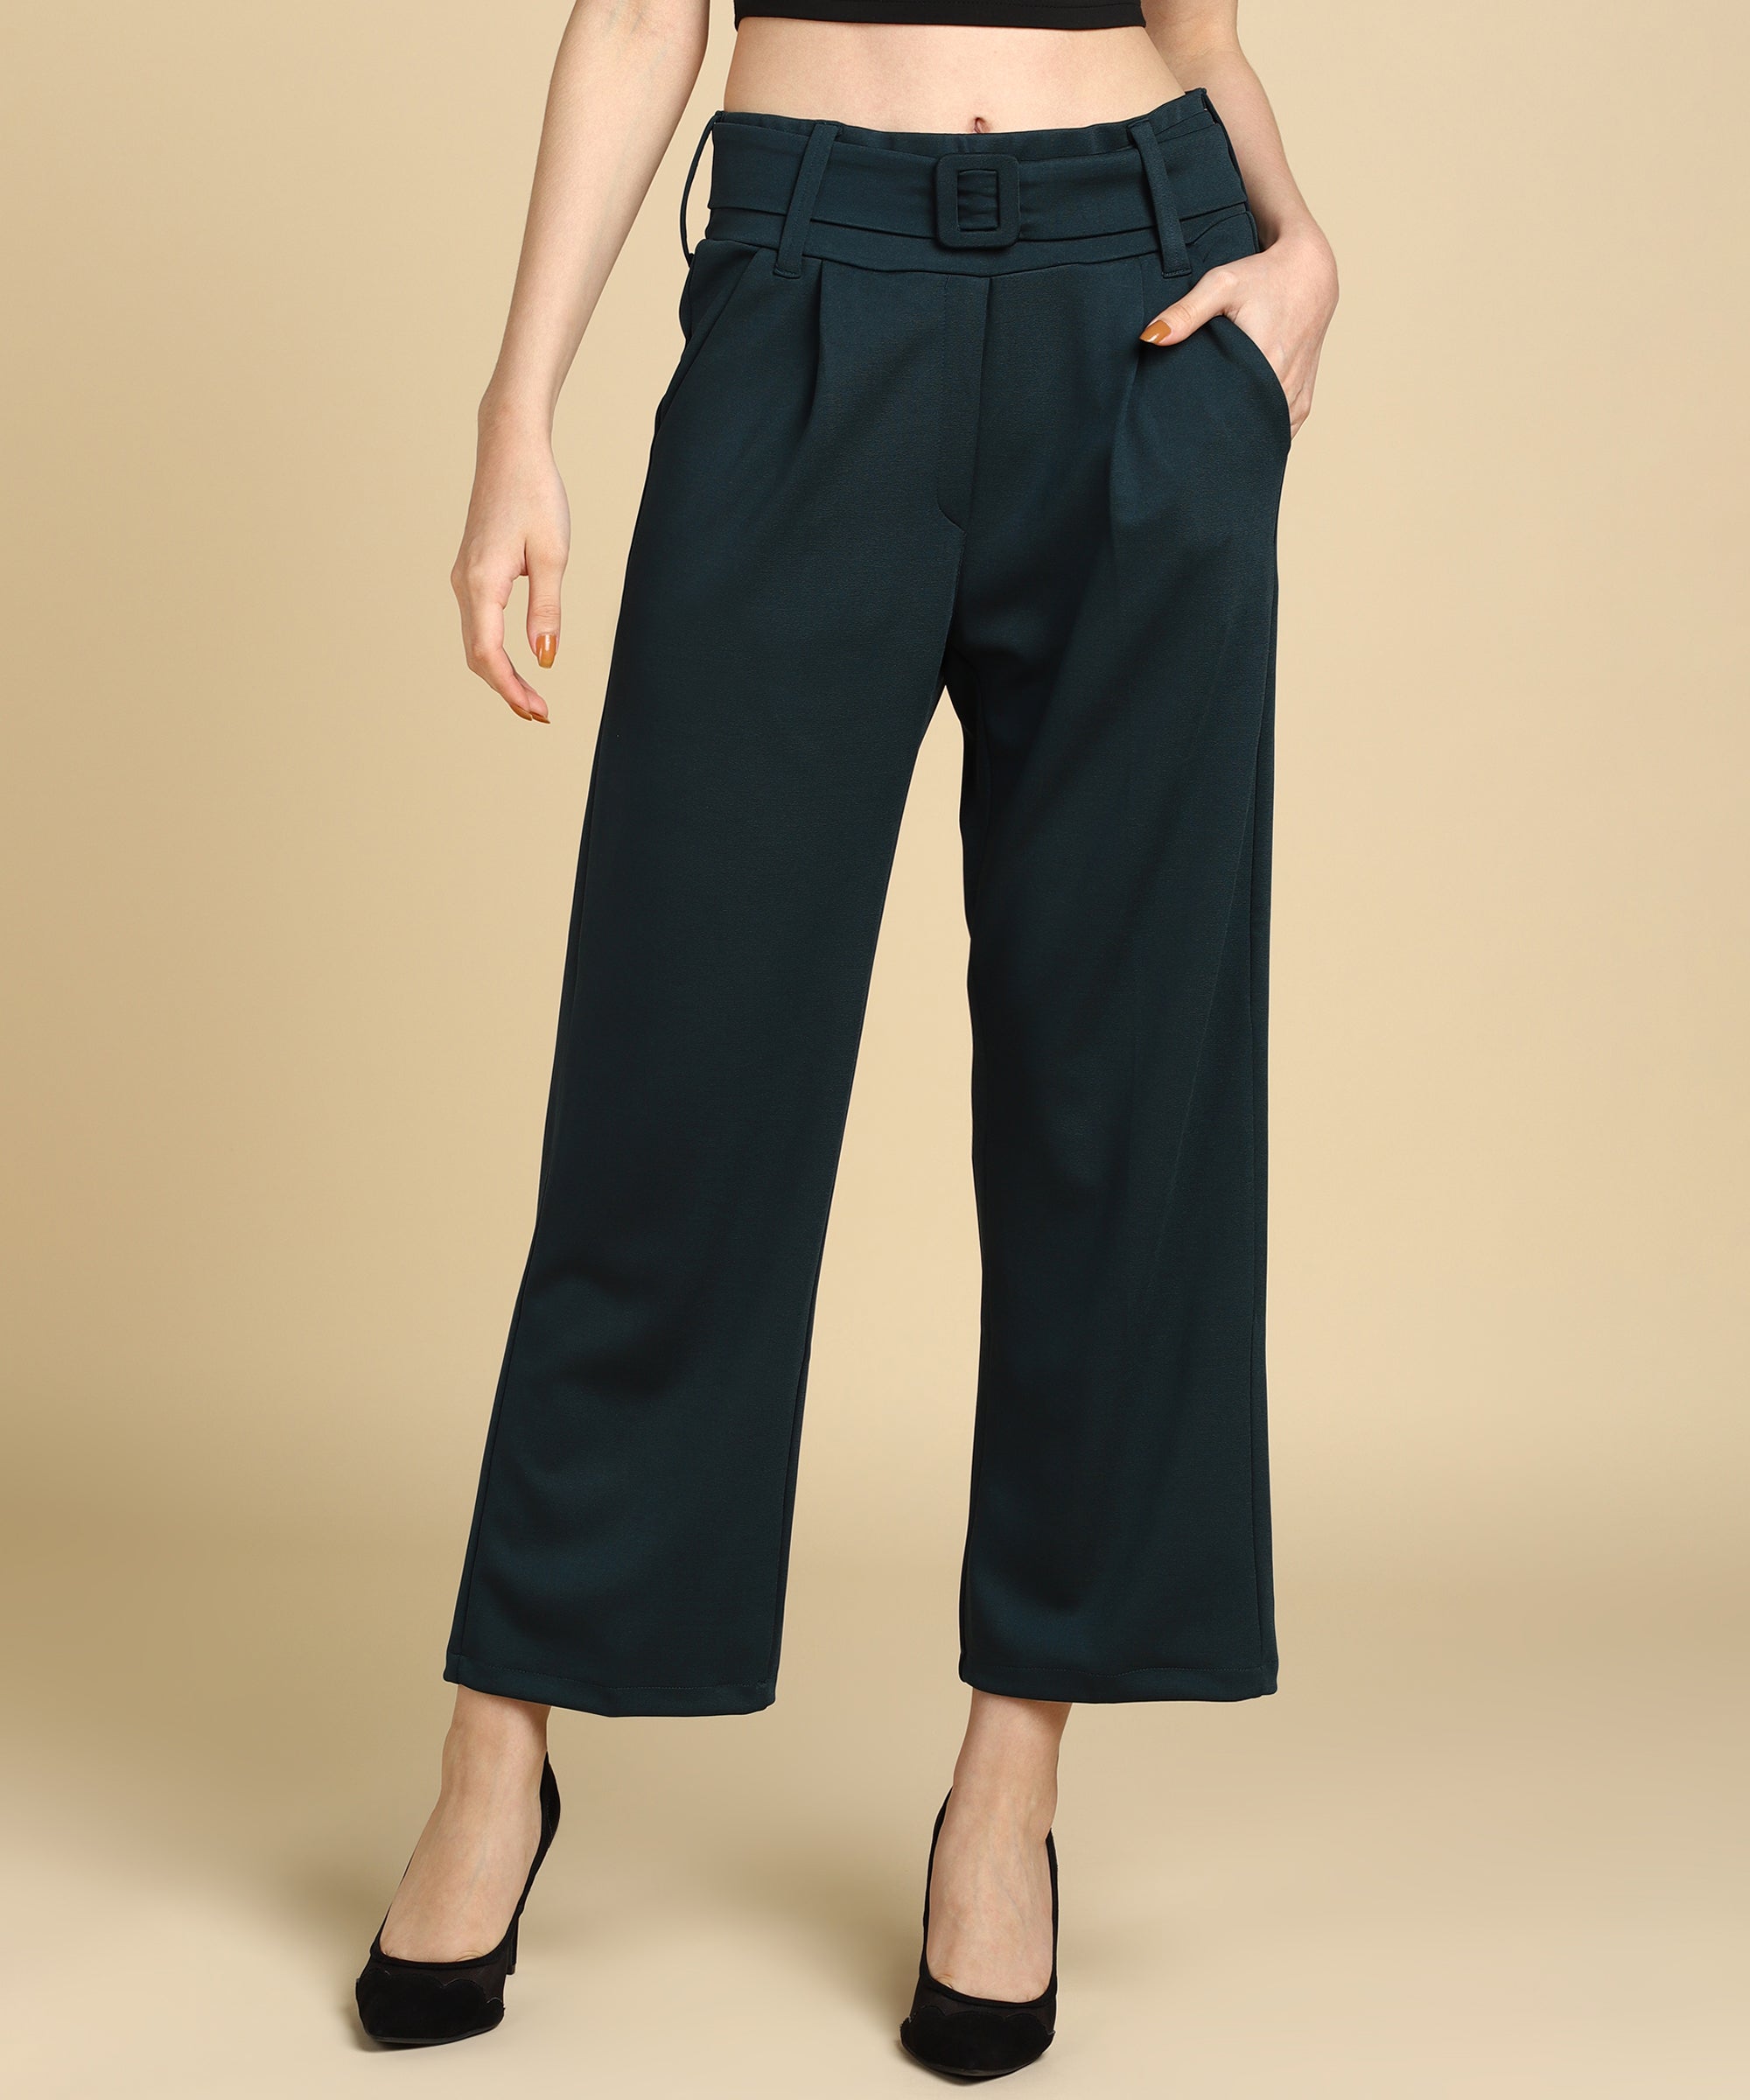 Buy KASSUALLY Black High Waist Flared Parallel Trouser online